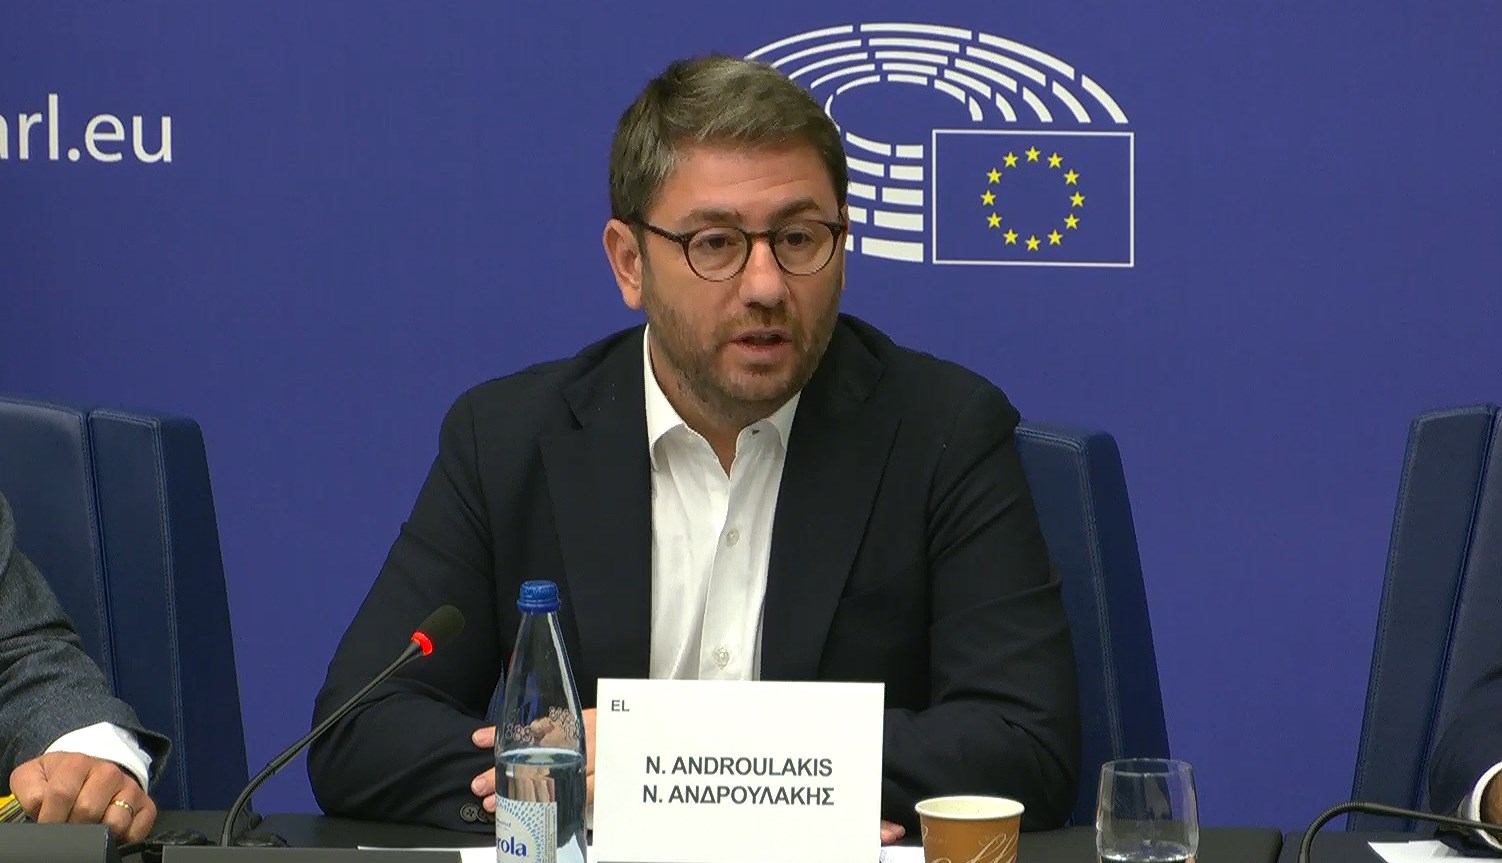 Καταπέλτης για Μητσοτάκη ο Νίκος Ανδρουλάκης στην Επιτροπή του Ευρωκοινοβουλίου : Πολιτικοί λόγοι παρακολούθησής μου – απόπειρα συγκάλυψης